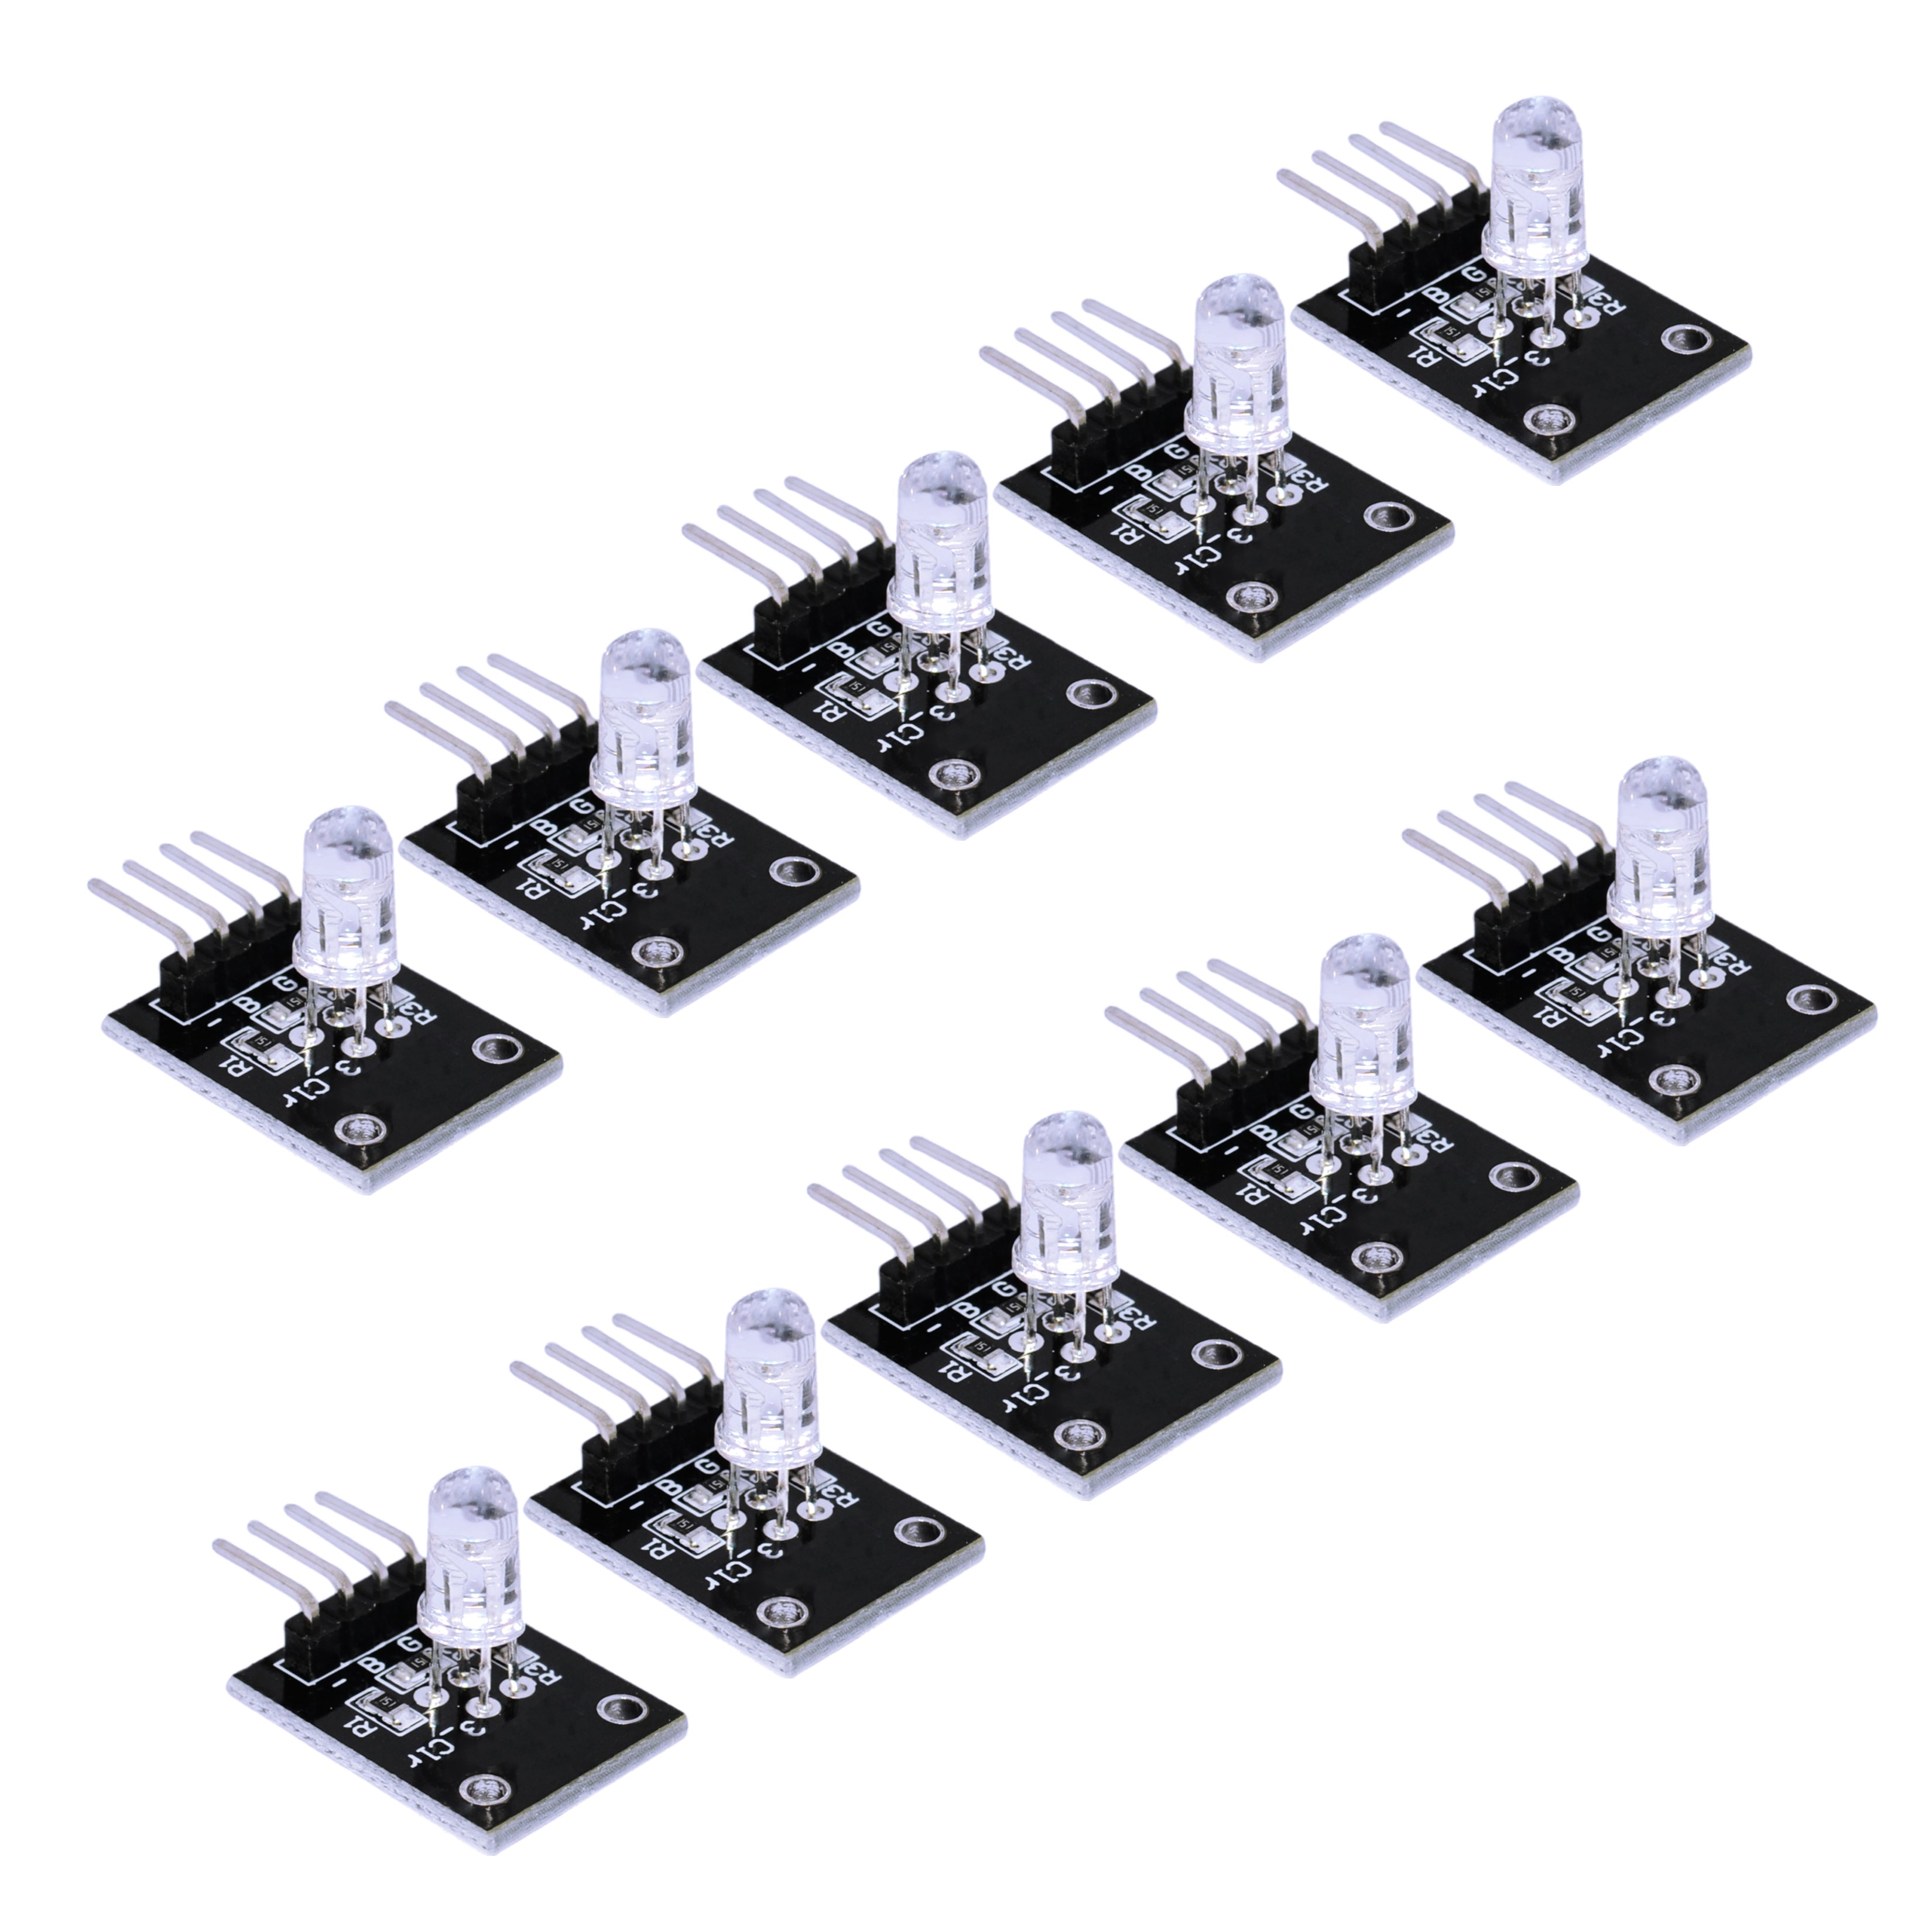 RGB LED Module for Arduino, ESP32, ESP8266, Raspberry Pi, 10 pieces